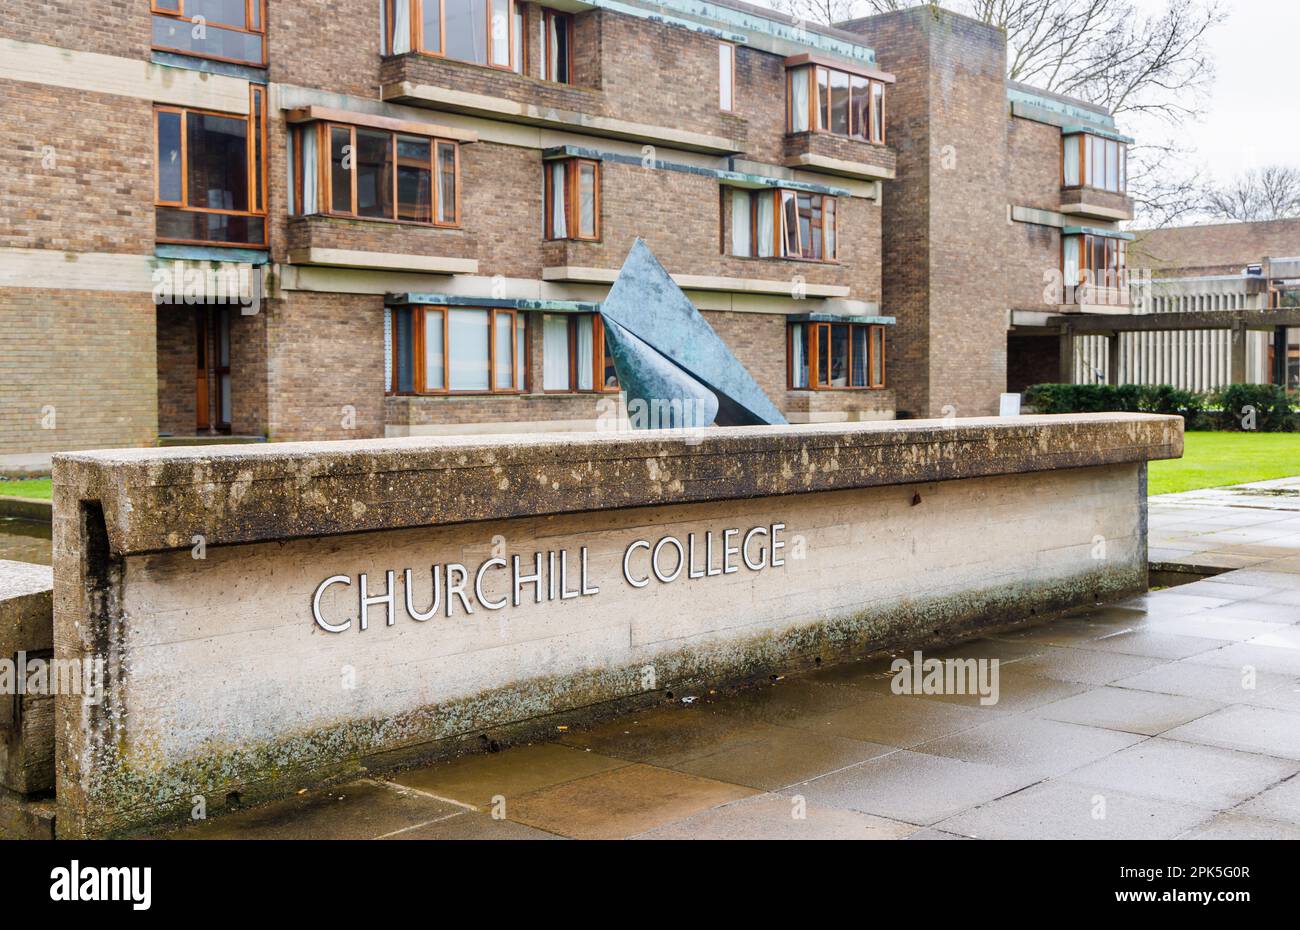 Il nome all'ingresso del Churchill College, parte dell'Università di Cambridge, Inghilterra orientale, visto da Storeys Way in una giornata di primavera bagnata Foto Stock